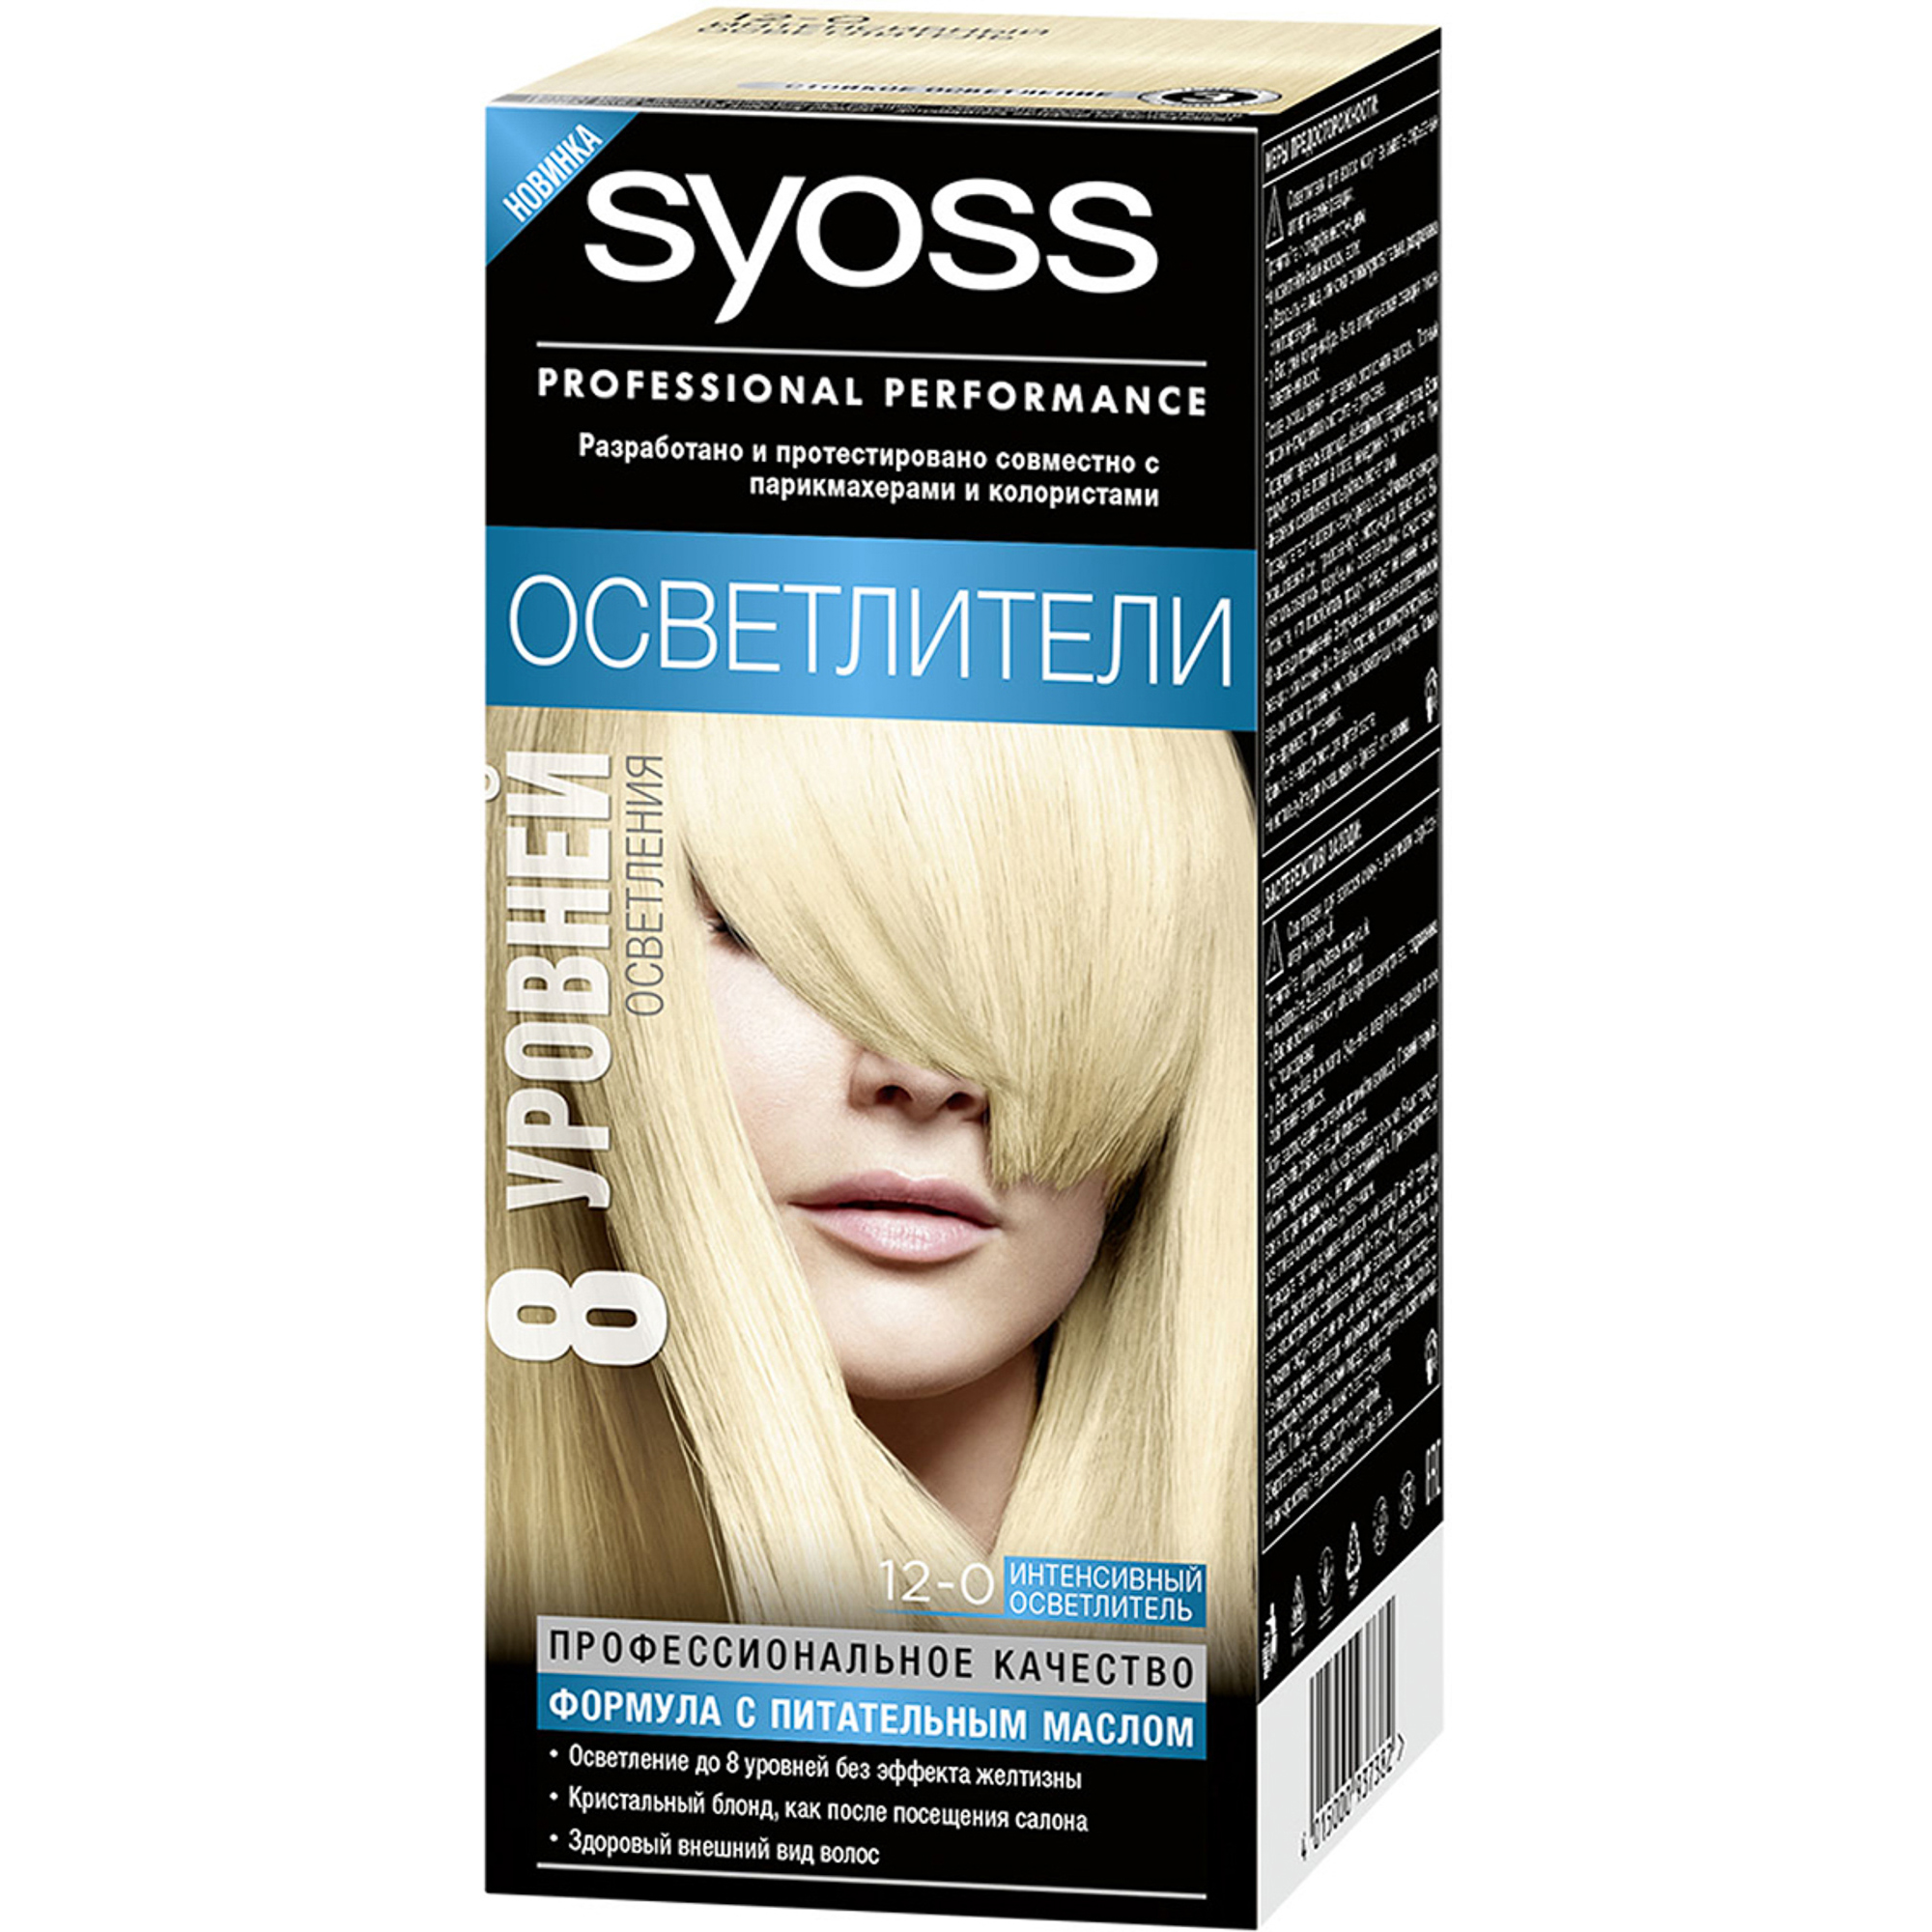 Краска для волос Syoss Осветлители 12-0 Интенсивный осветлитель краска для волос syoss salonplex 7 7 паприка